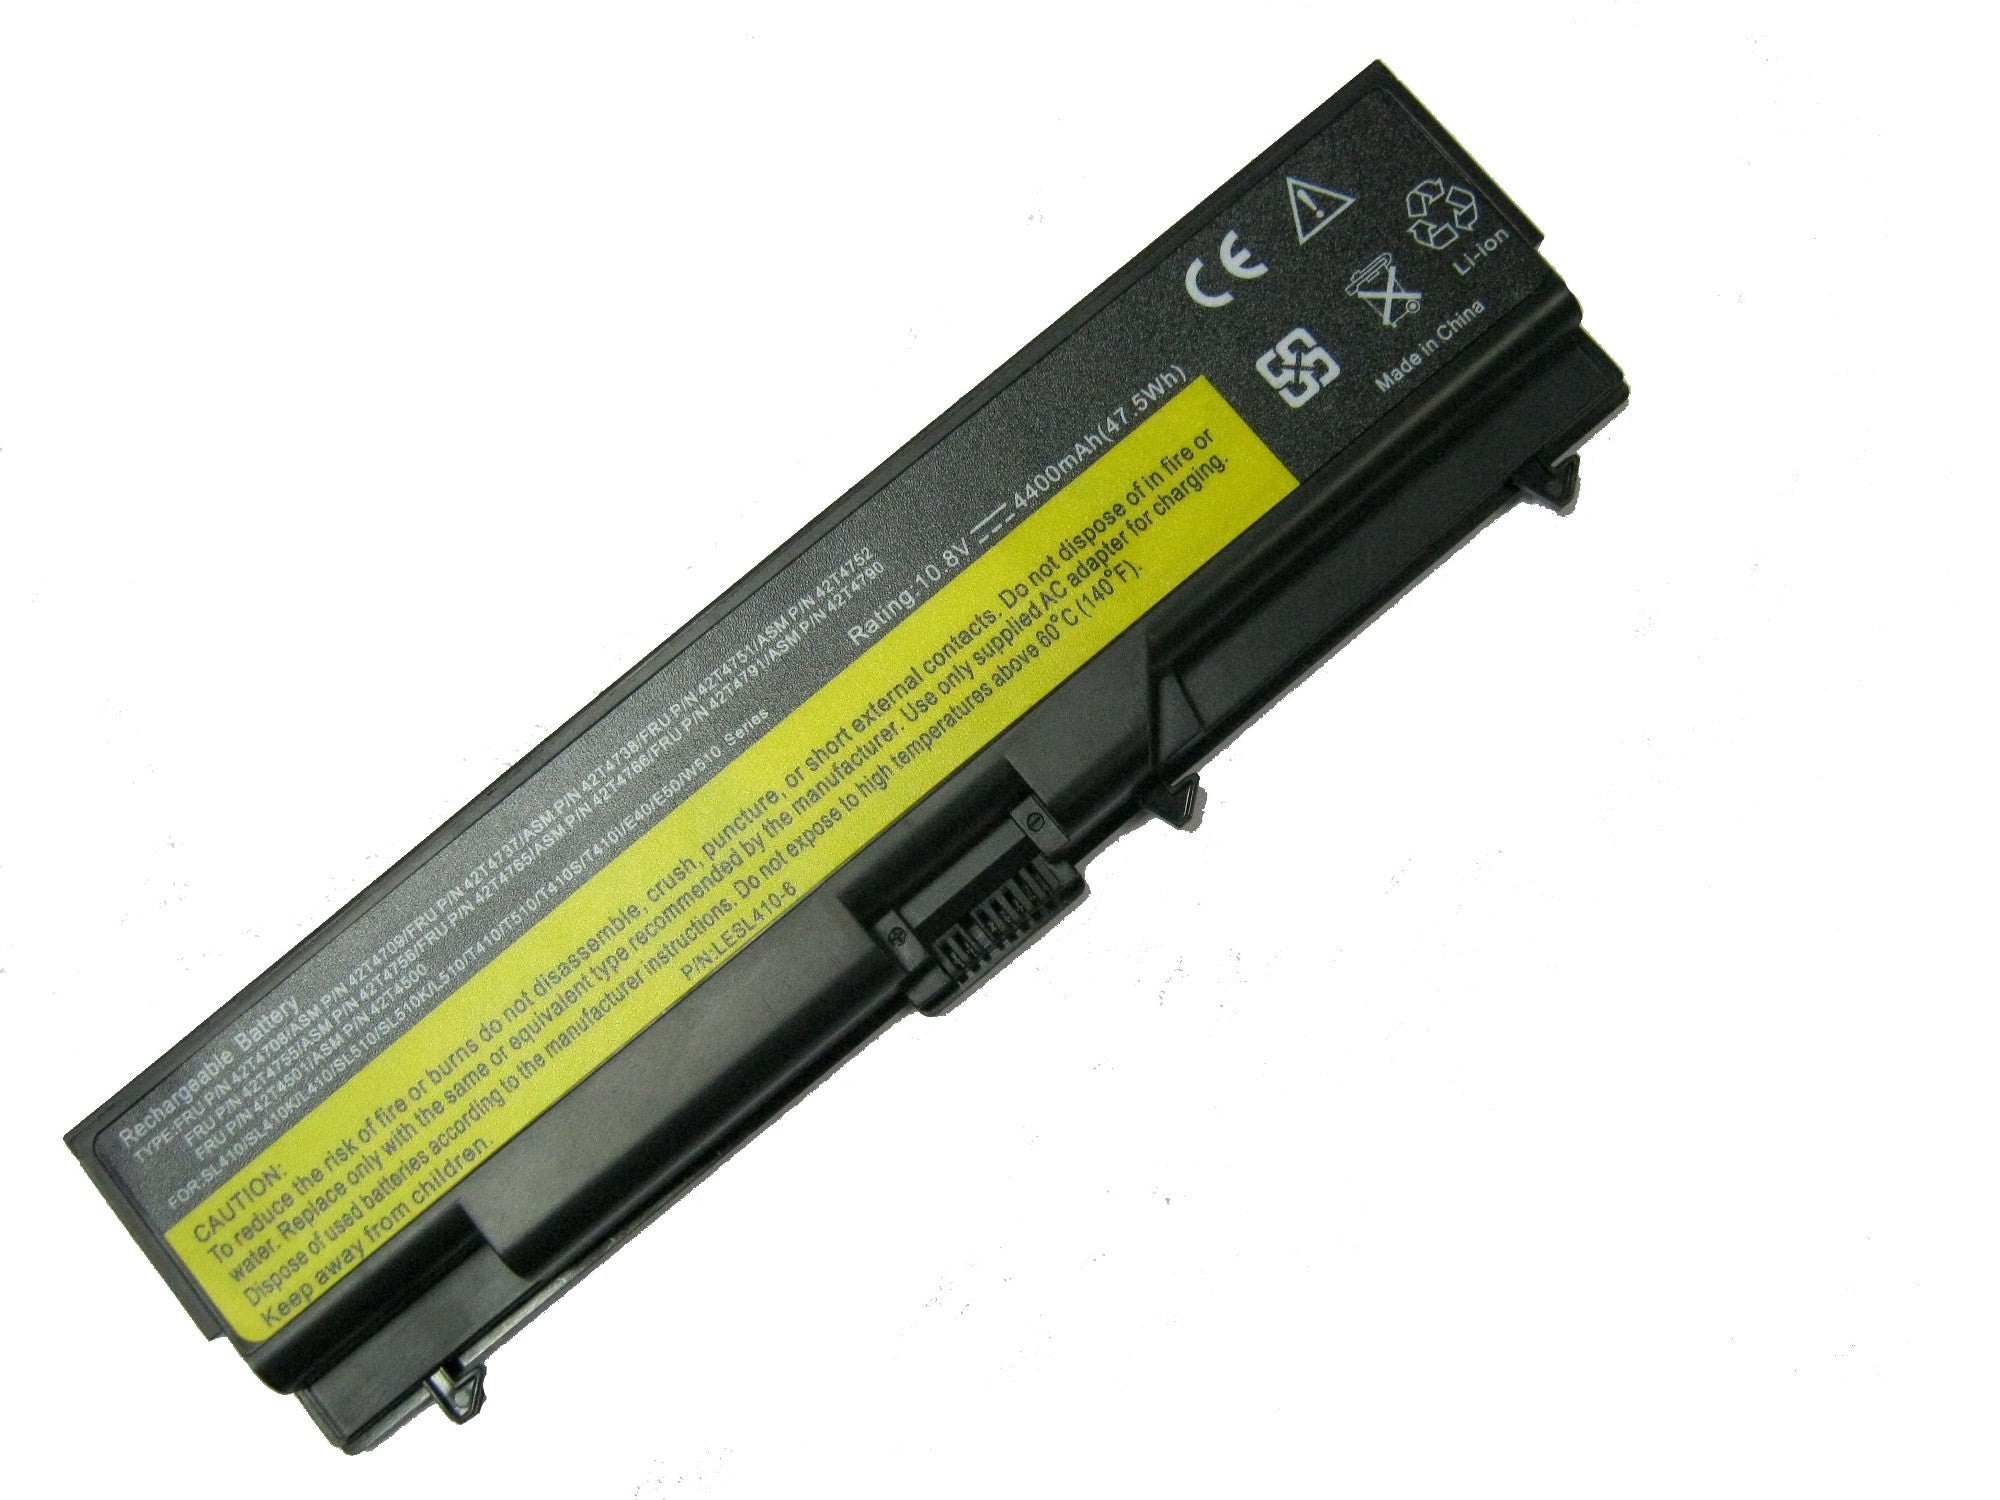 Lenovo SL410- T410- T510 -T420 Laptop Battery